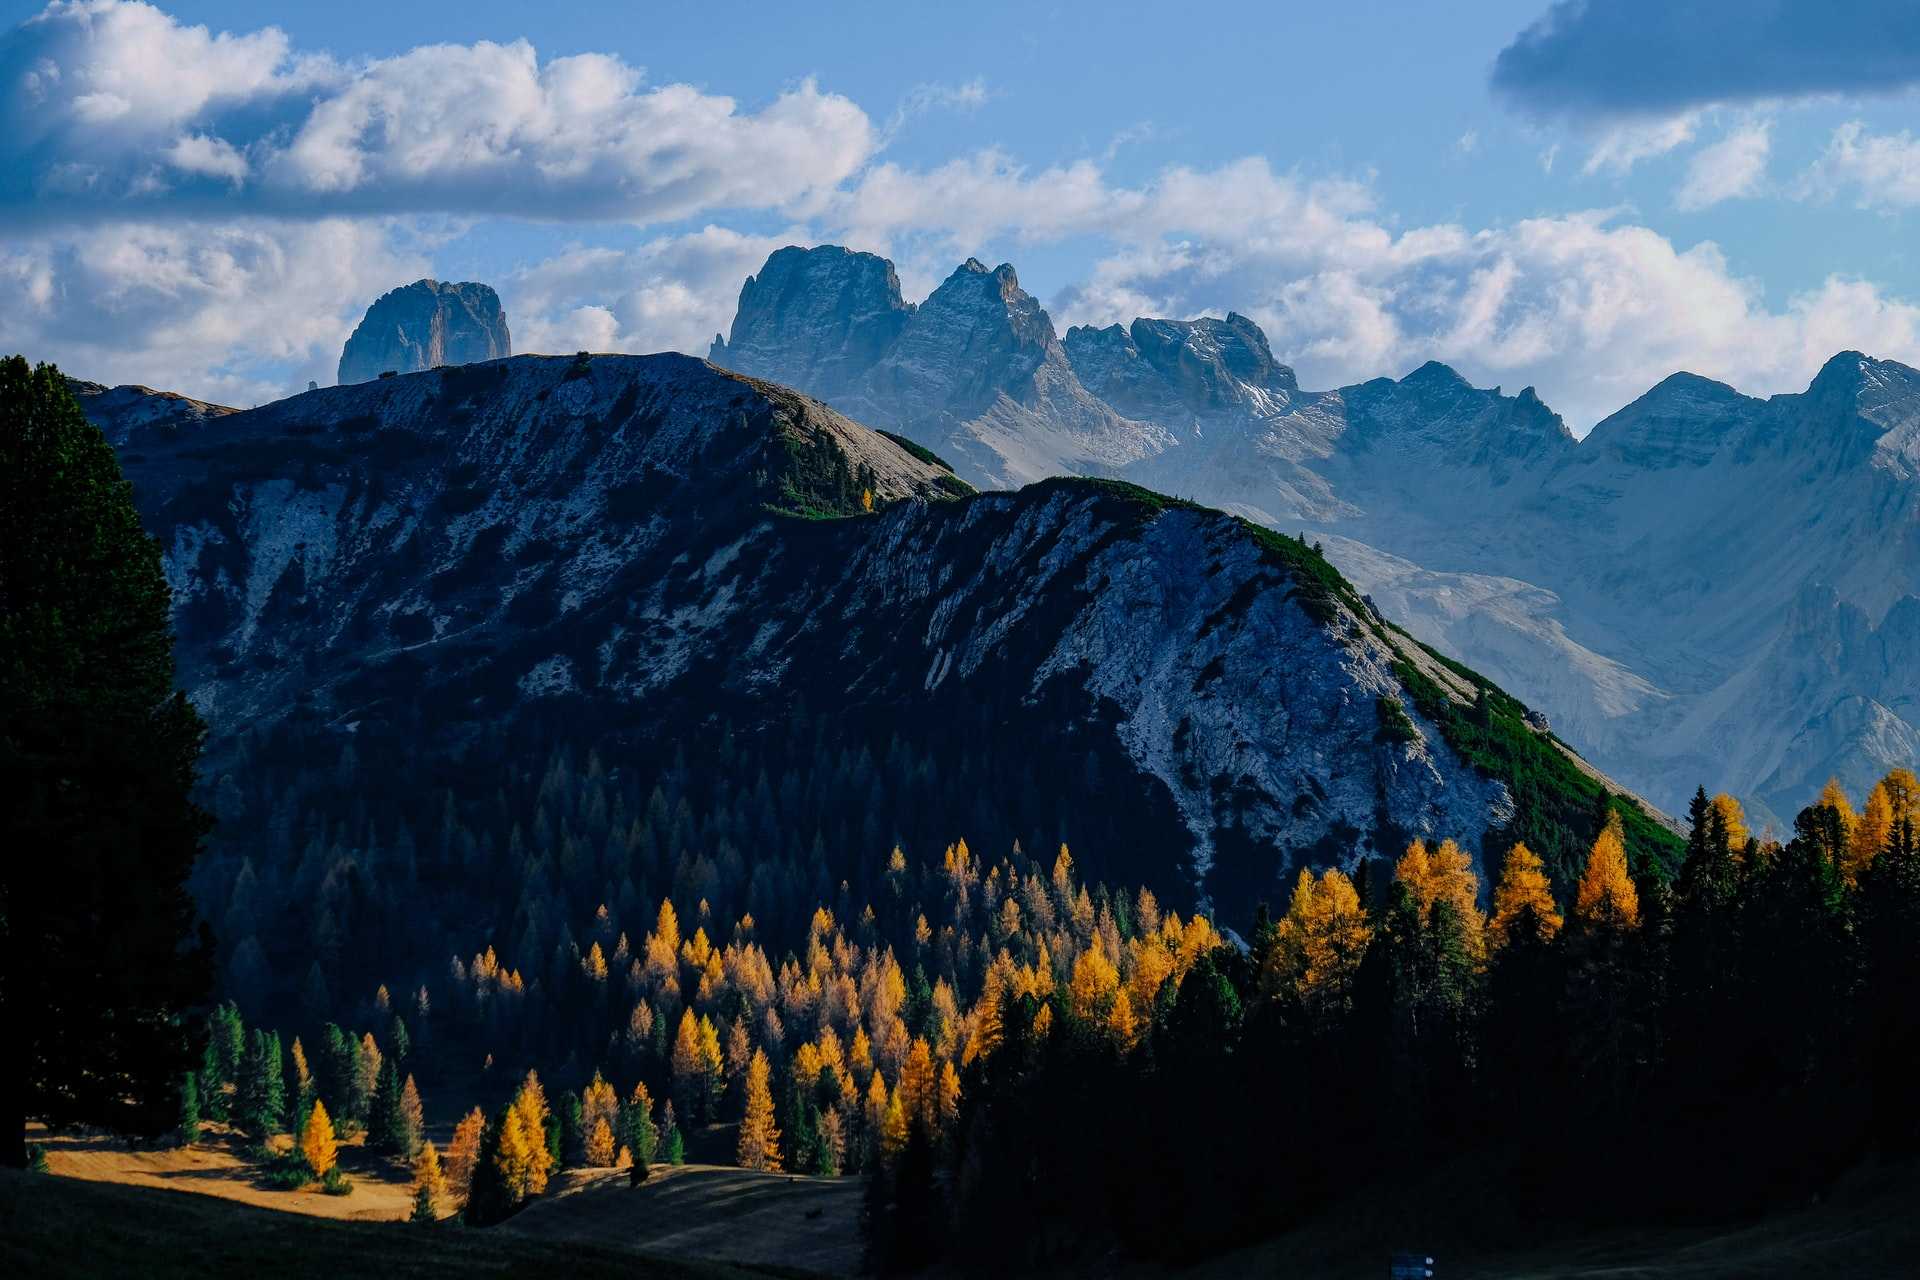 View of Dolomites peaks